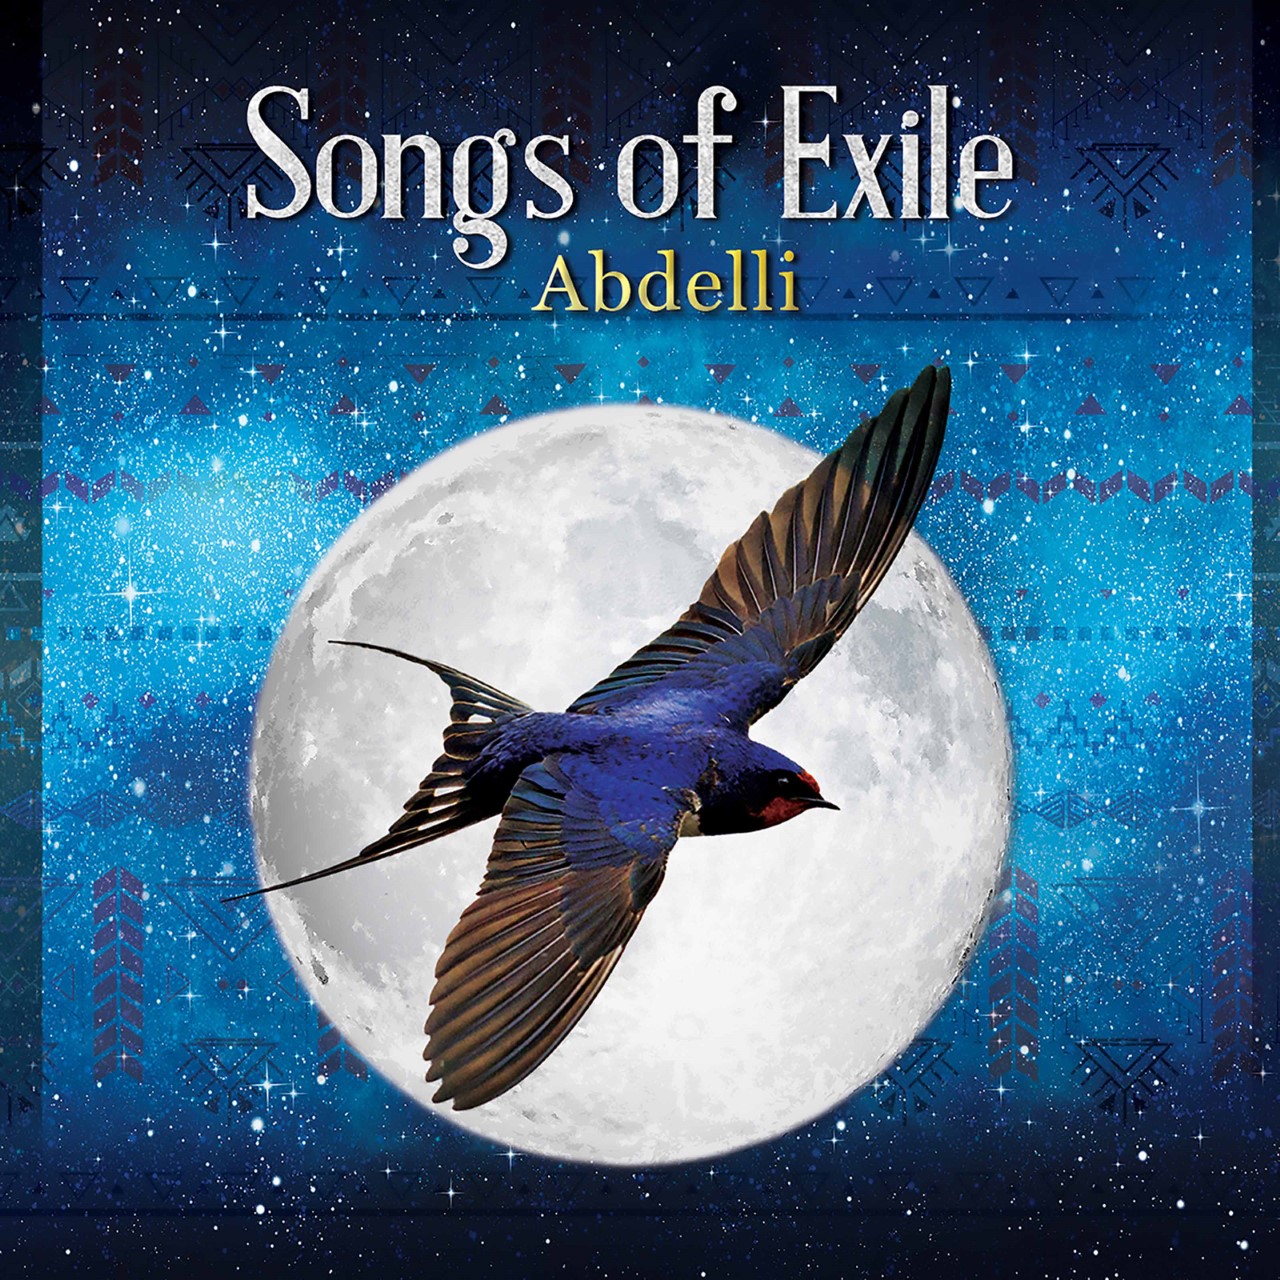 إعلان ألبوم "أغاني المنفى" للموسيقي الجزائري الأمازيغي عبد الرحمن العبدلي. Album cover of "Songs of exile" (distributed by ARC Music)